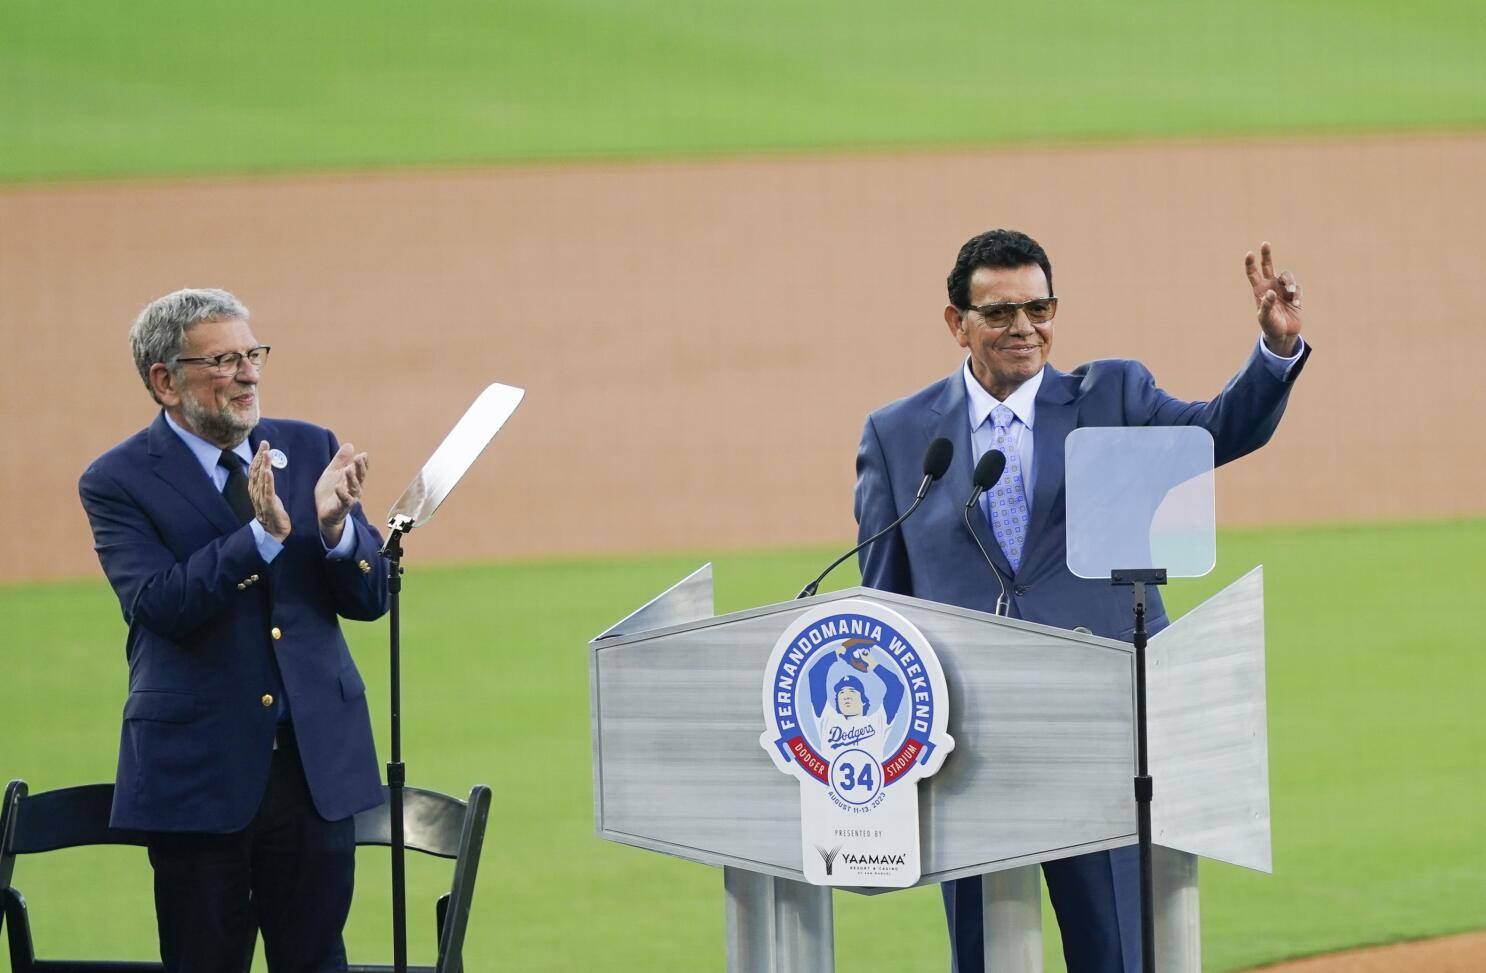 Los Angeles Dodger pitcher Fernando Valenzuela and wife Linda